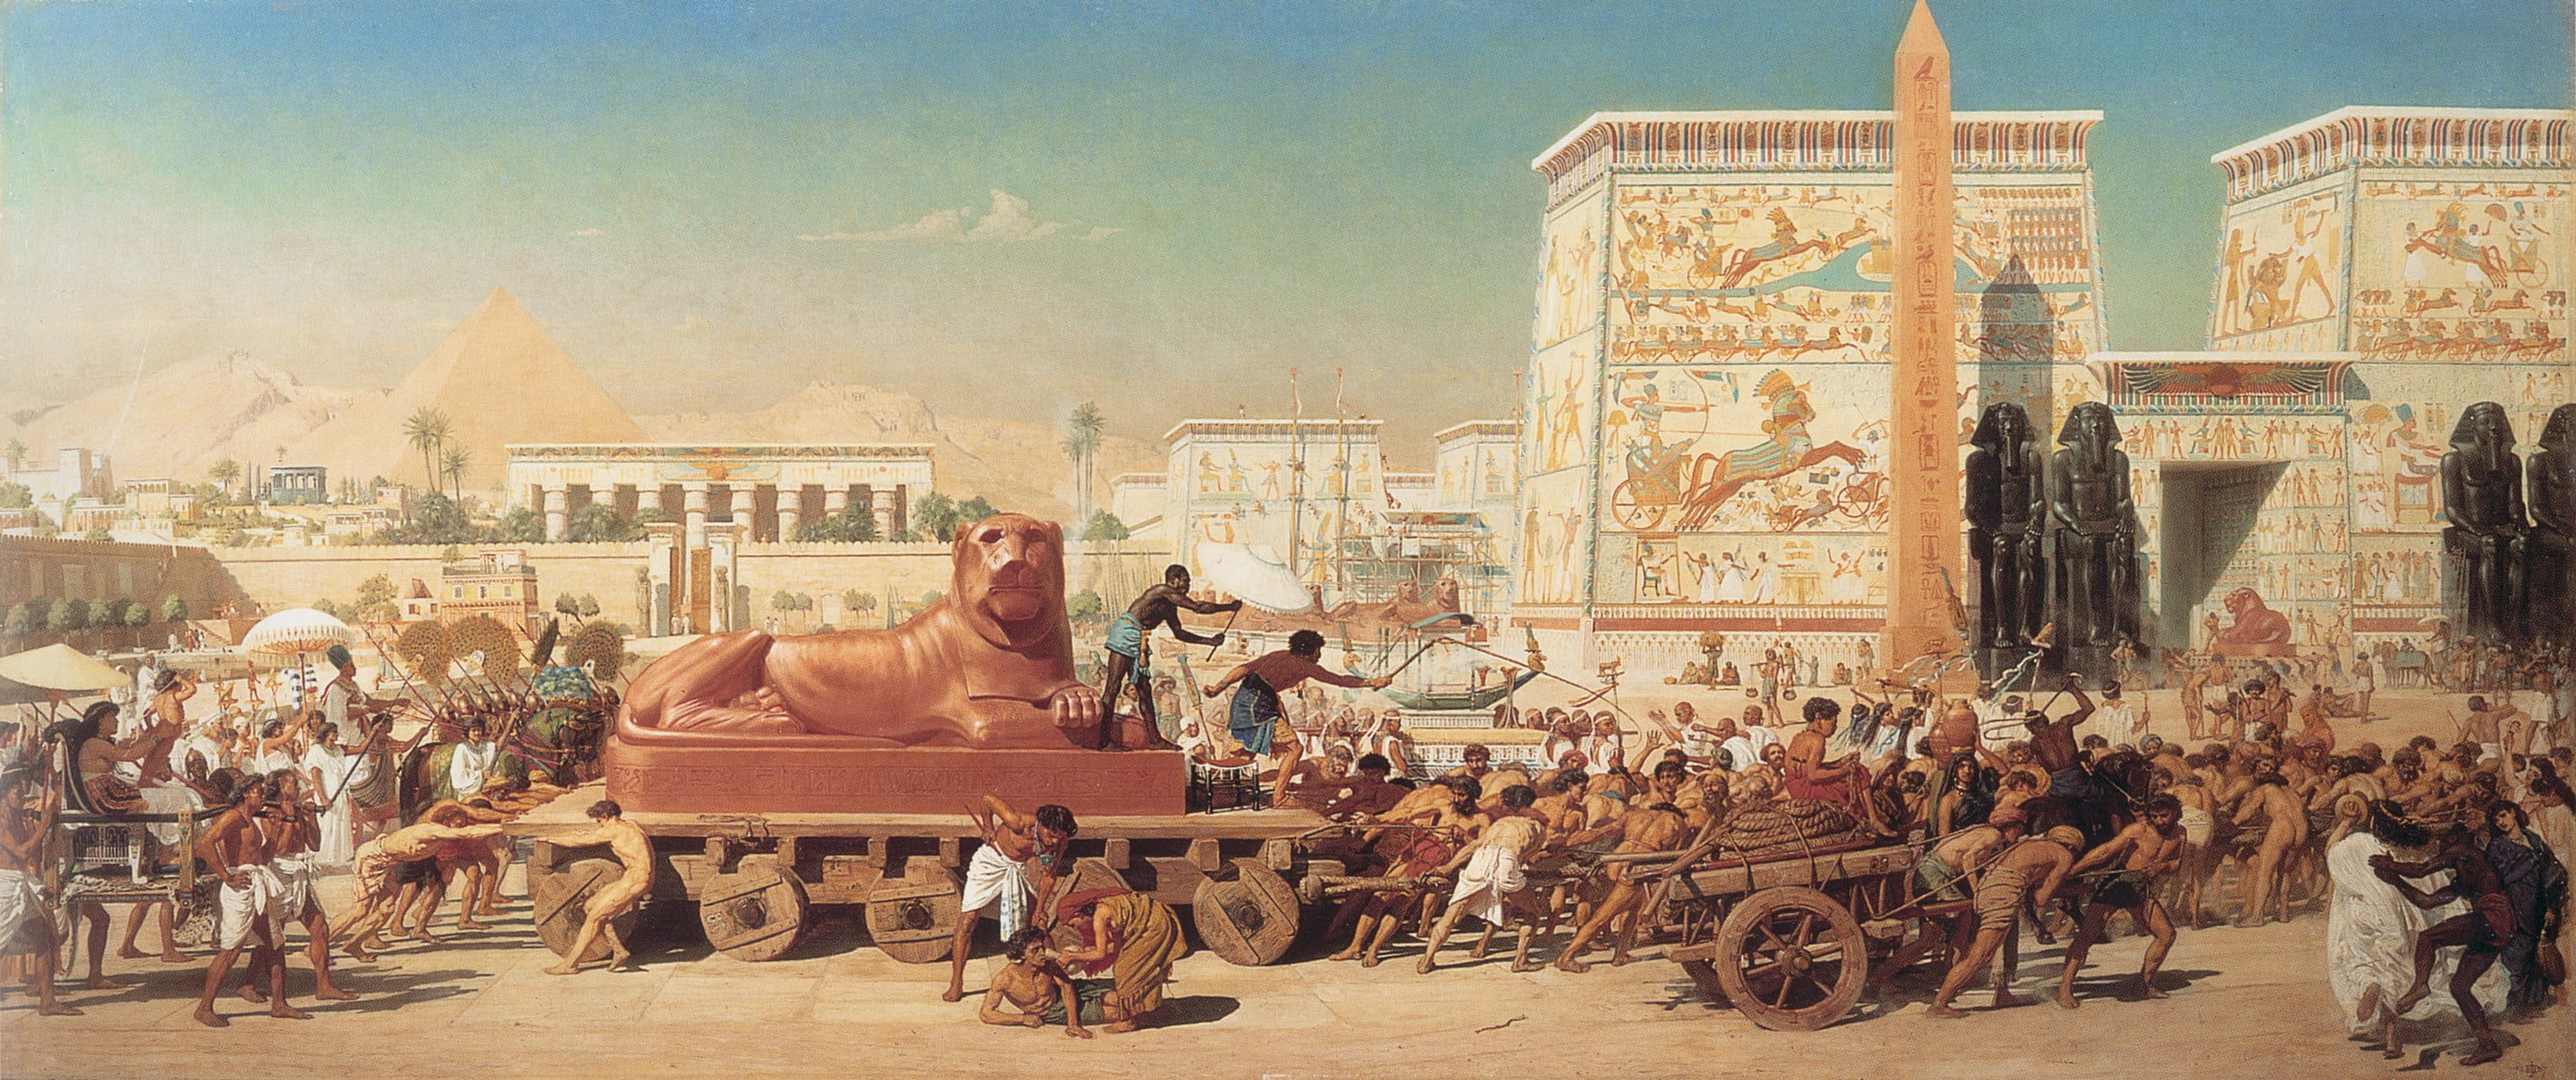 Edward Poynter Israel In Egypt , HD Wallpaper & Backgrounds